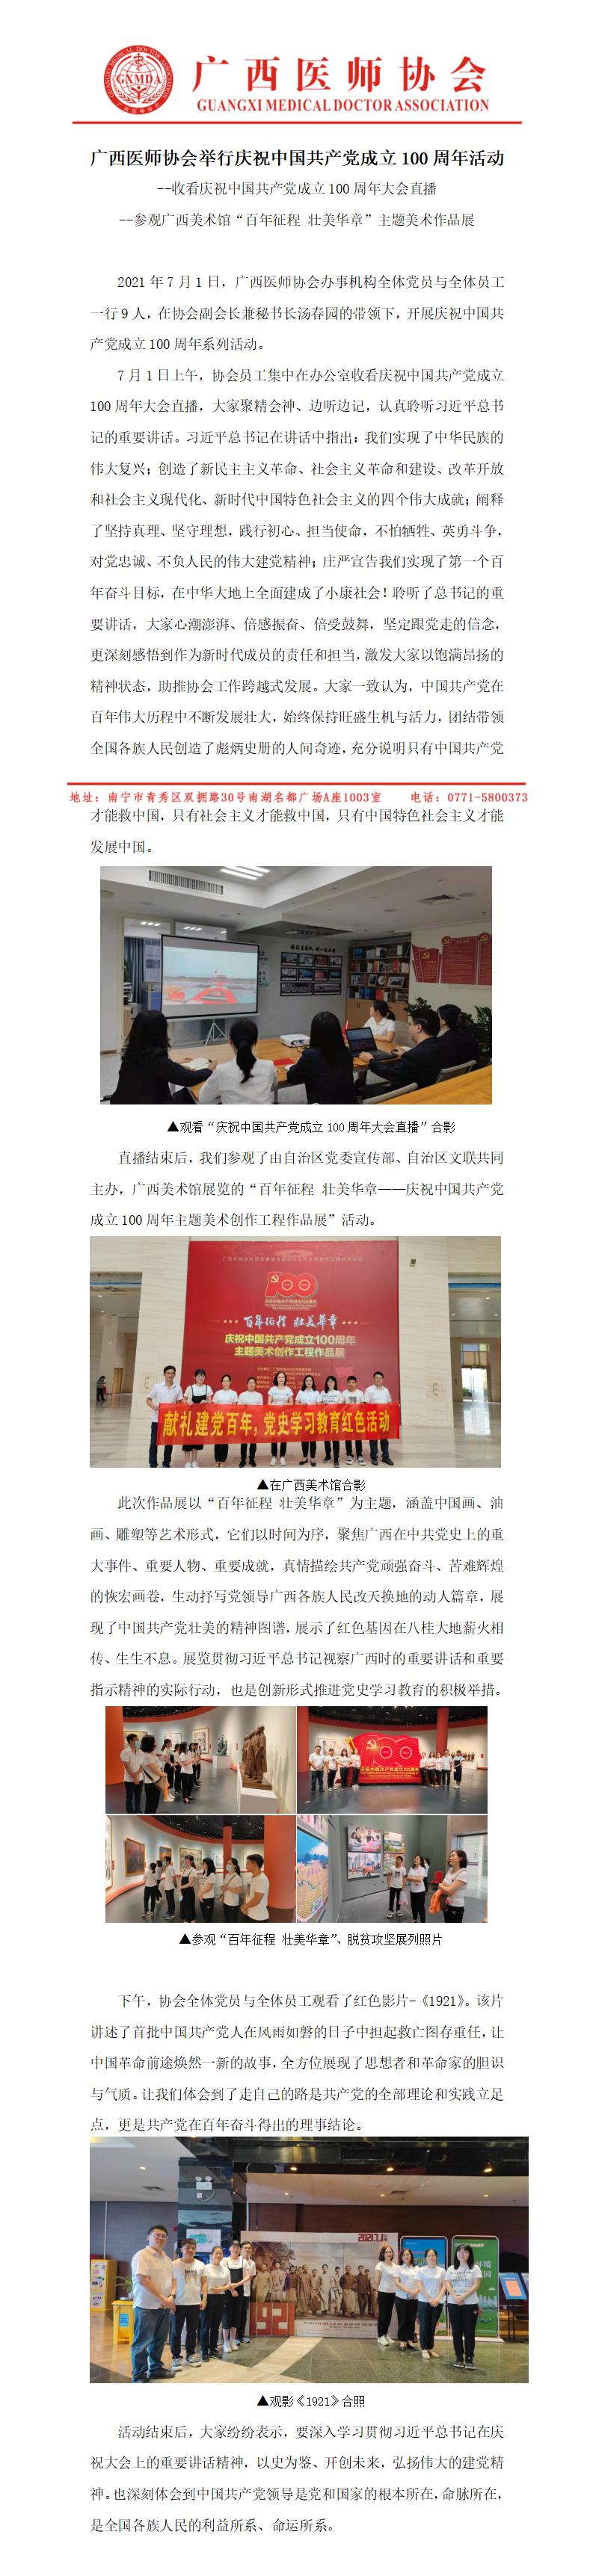 广西医师协会举行庆祝中国共产党成立100周年活动新闻稿_01.jpg